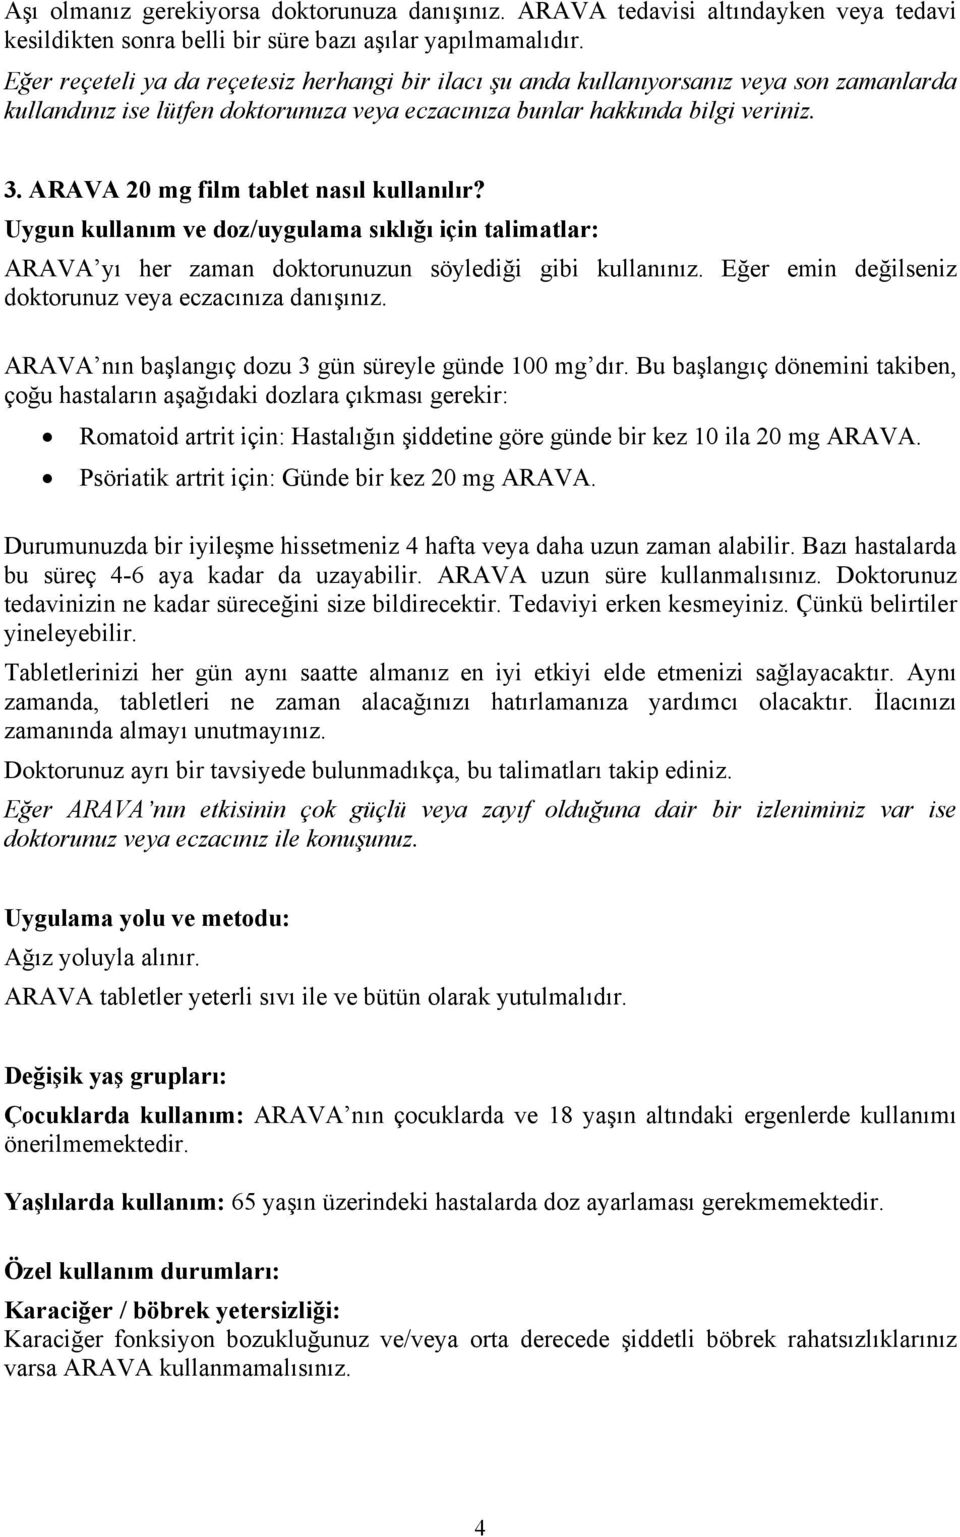 ARAVA 20 mg film tablet nasıl kullanılır? Uygun kullanım ve doz/uygulama sıklığı için talimatlar: ARAVA yı her zaman doktorunuzun söylediği gibi kullanınız.